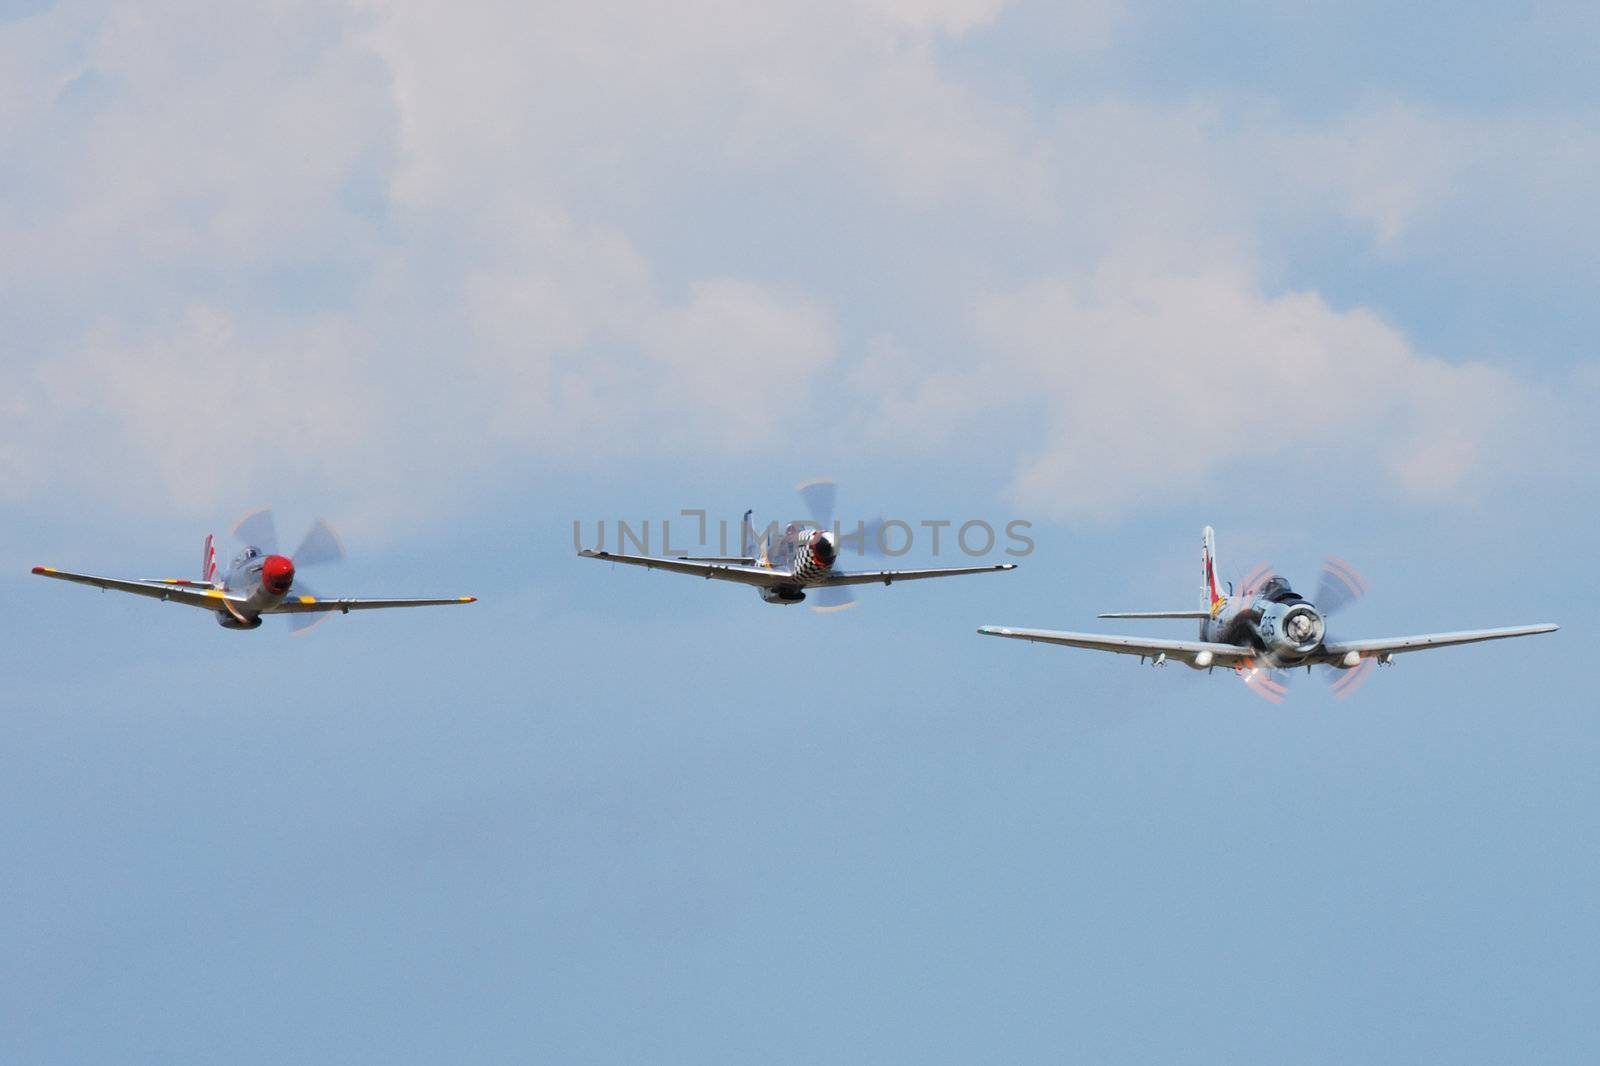 Three war planes in flight by pauws99